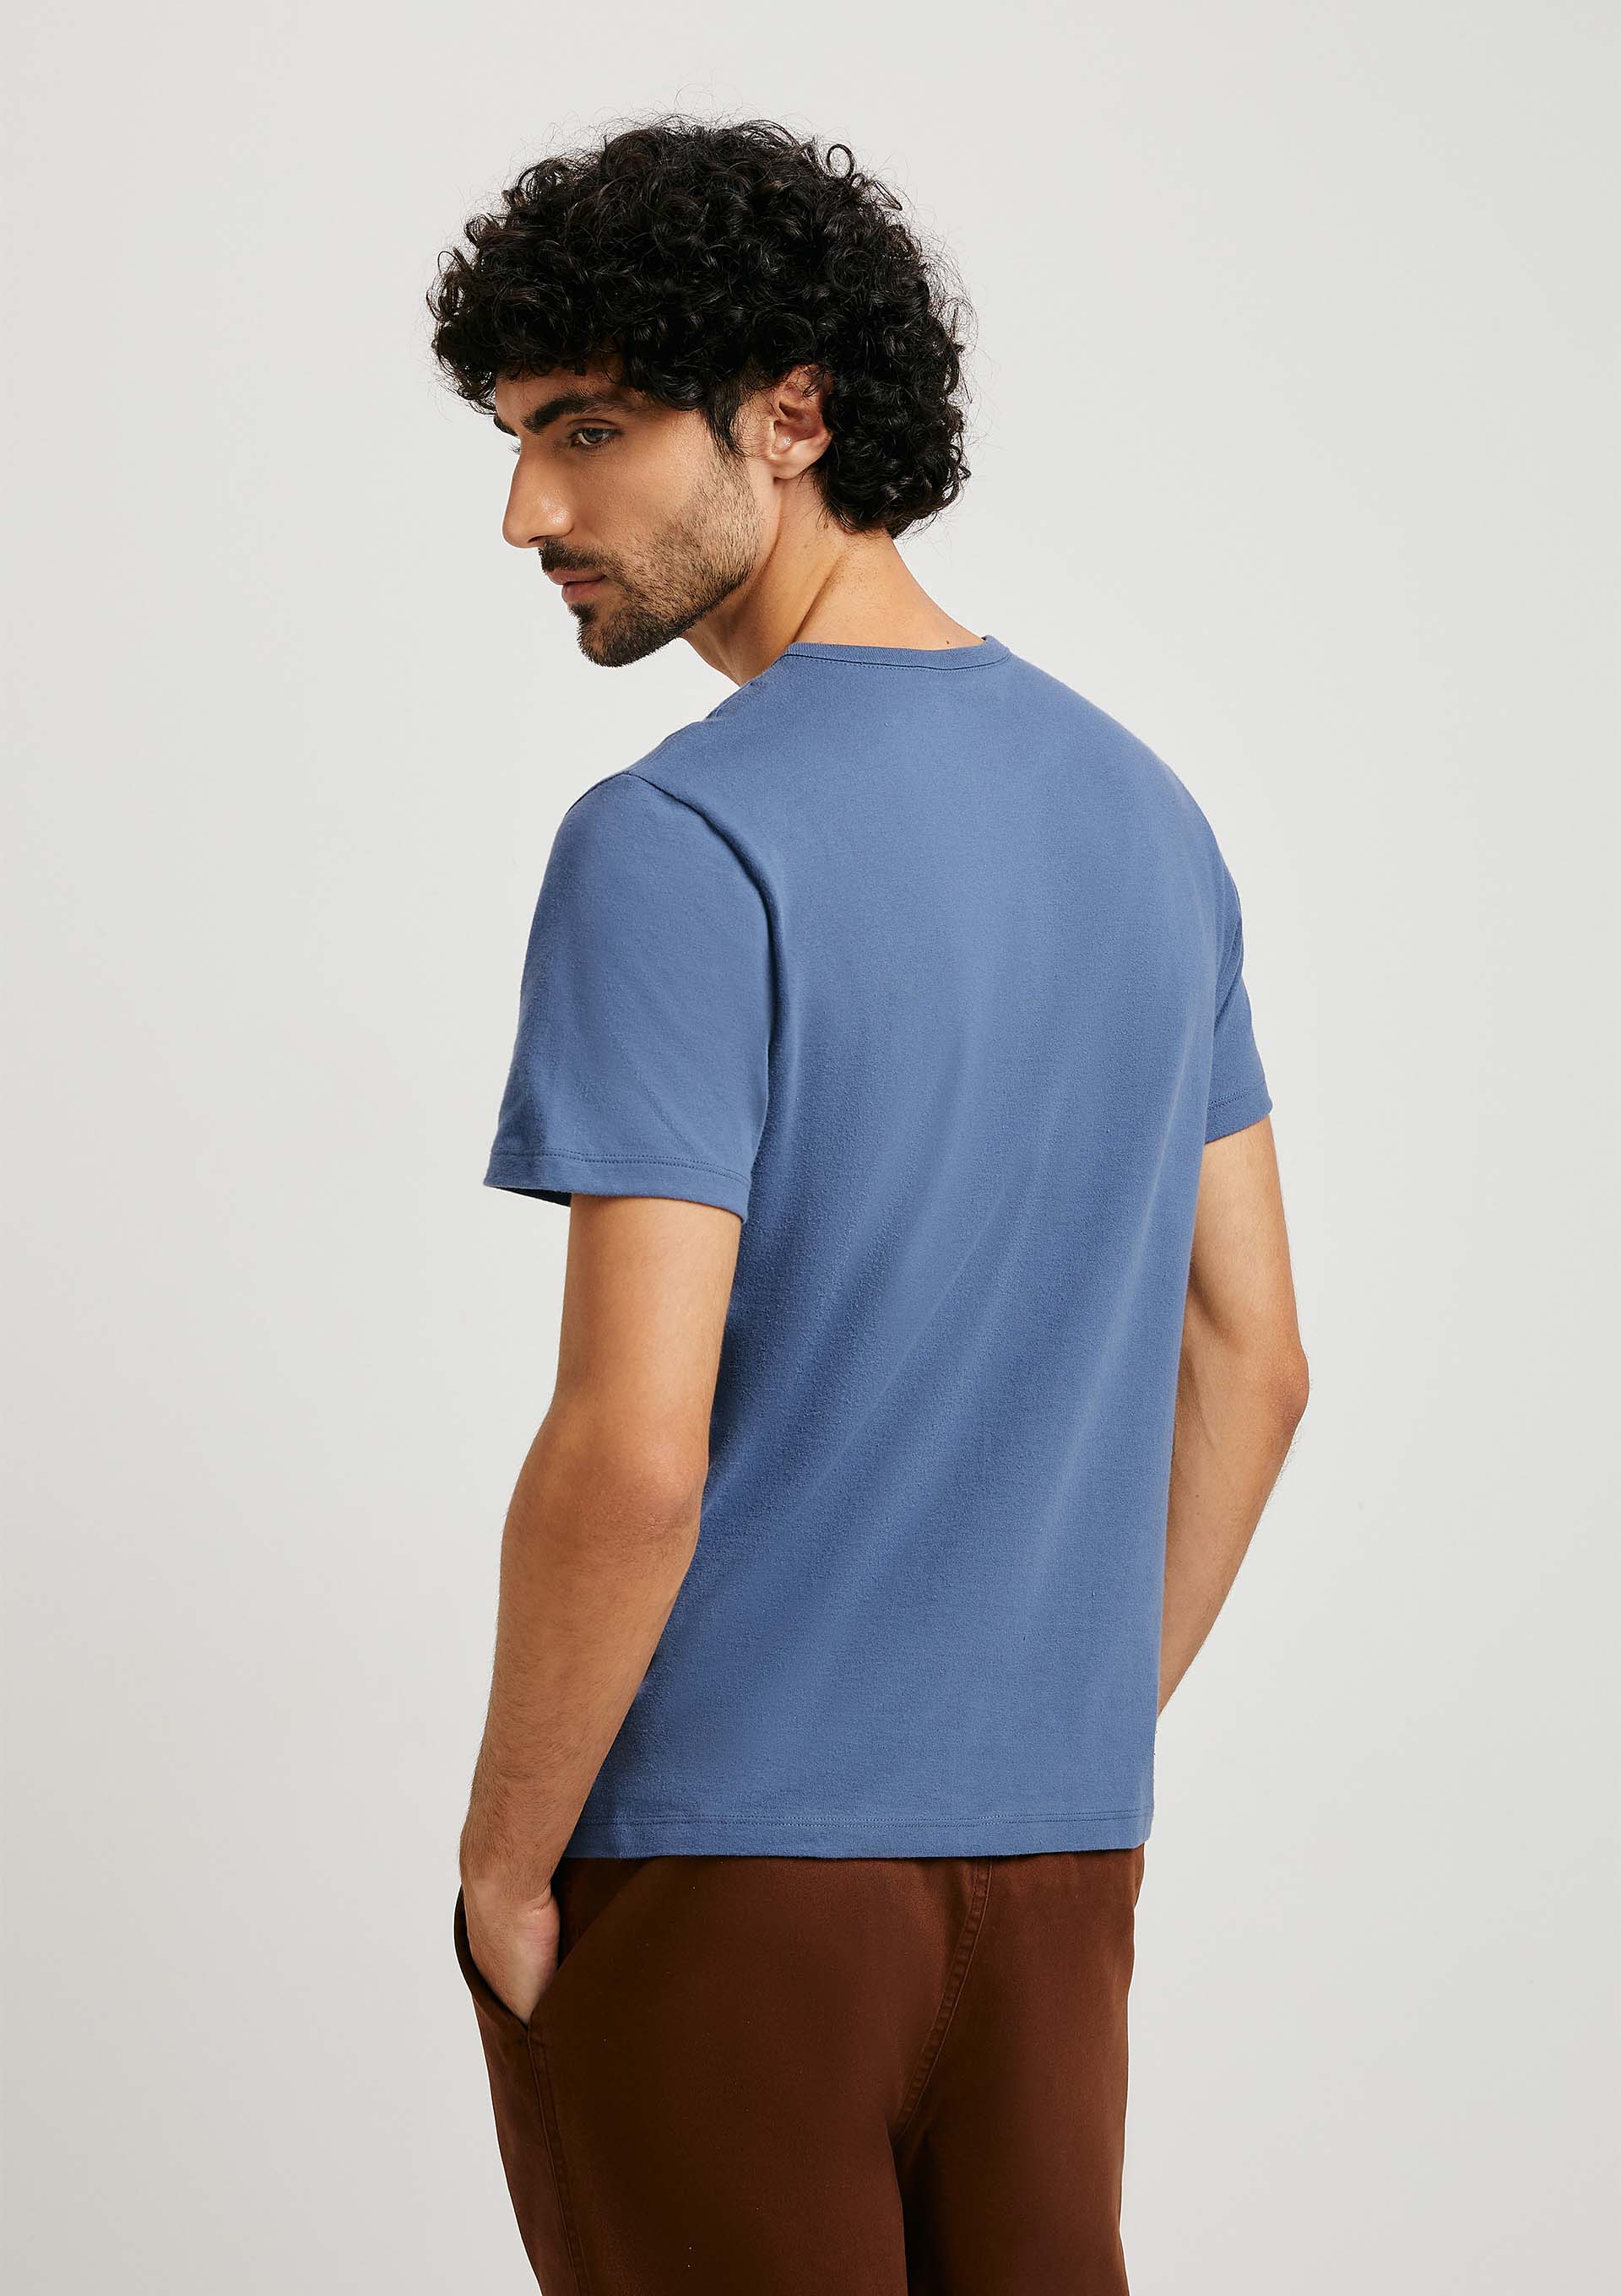 compression shirt Camisa justa, manga curta masculina, sutiã esportivo  básico, camiseta de treino (Color : A1, Size : Medium)